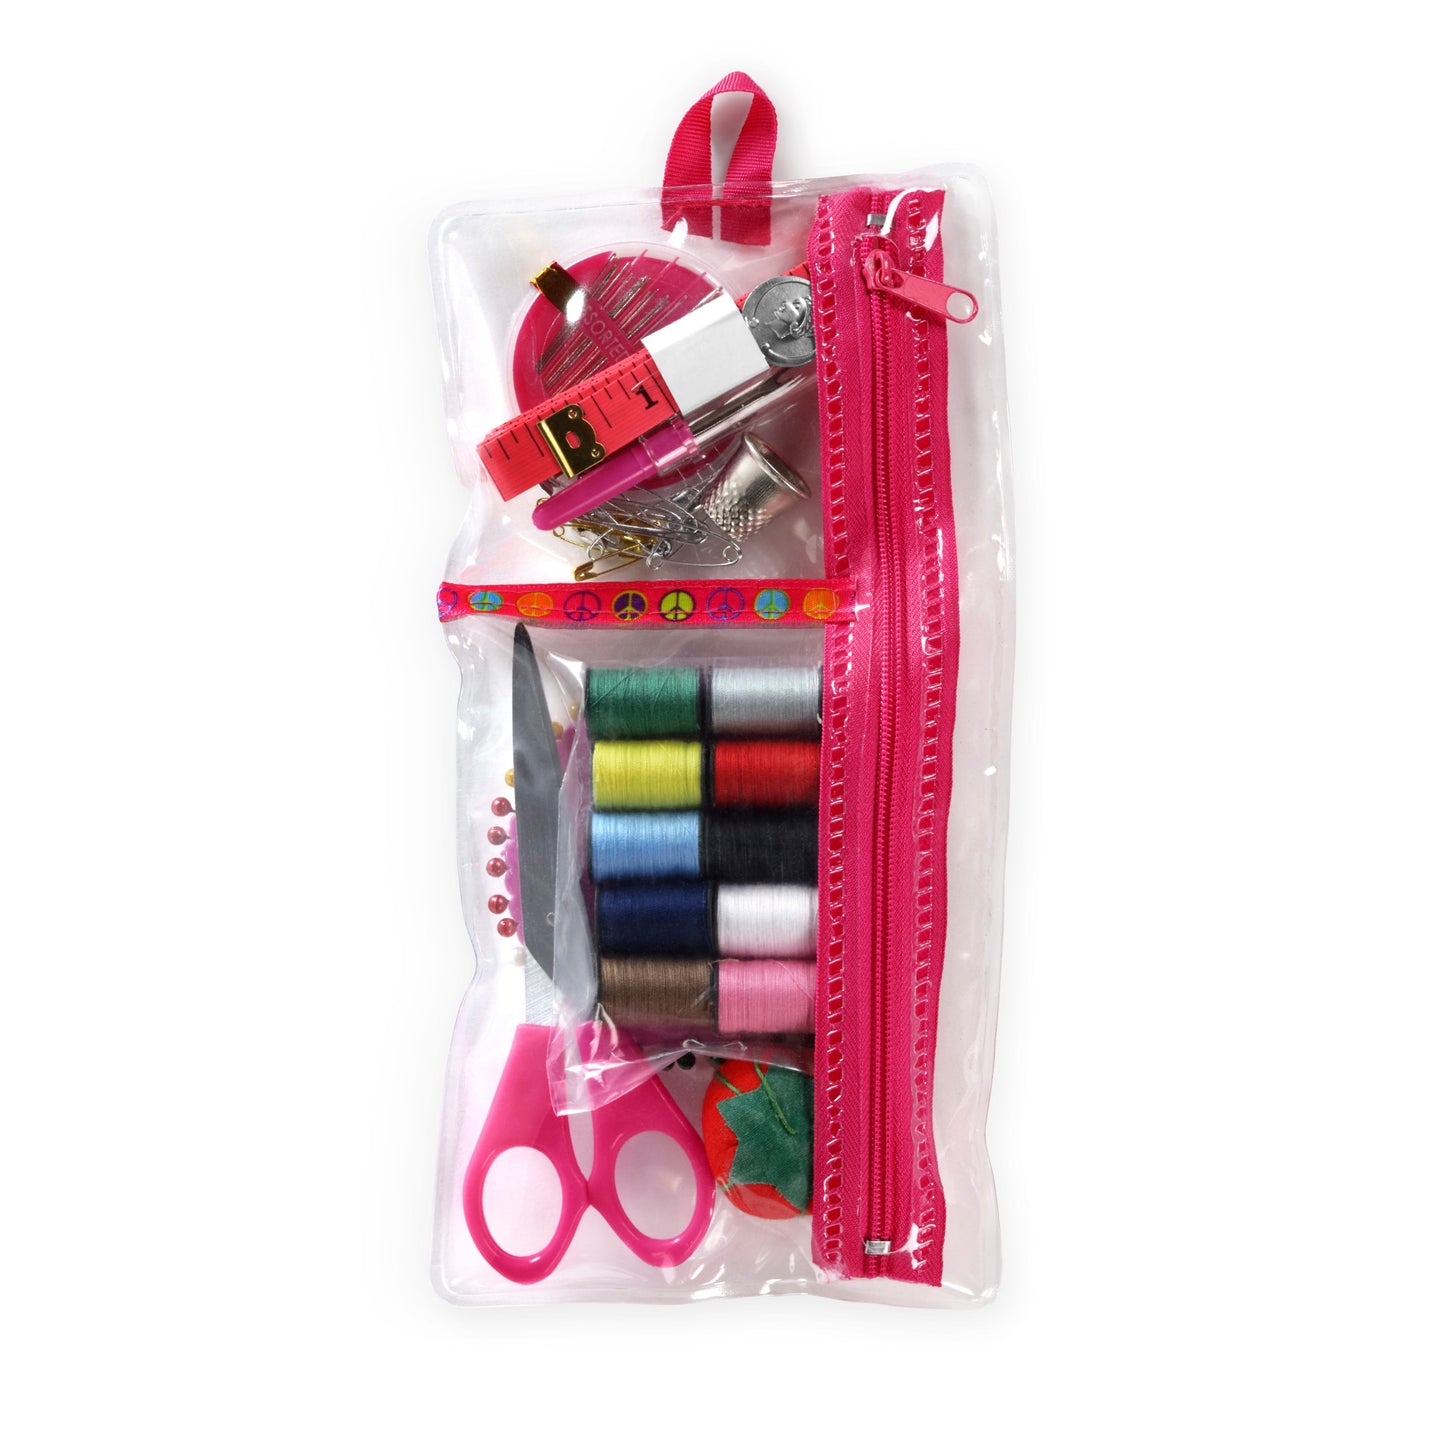 Dritz Sew, Repair & Refashion Sewing Kit Pink